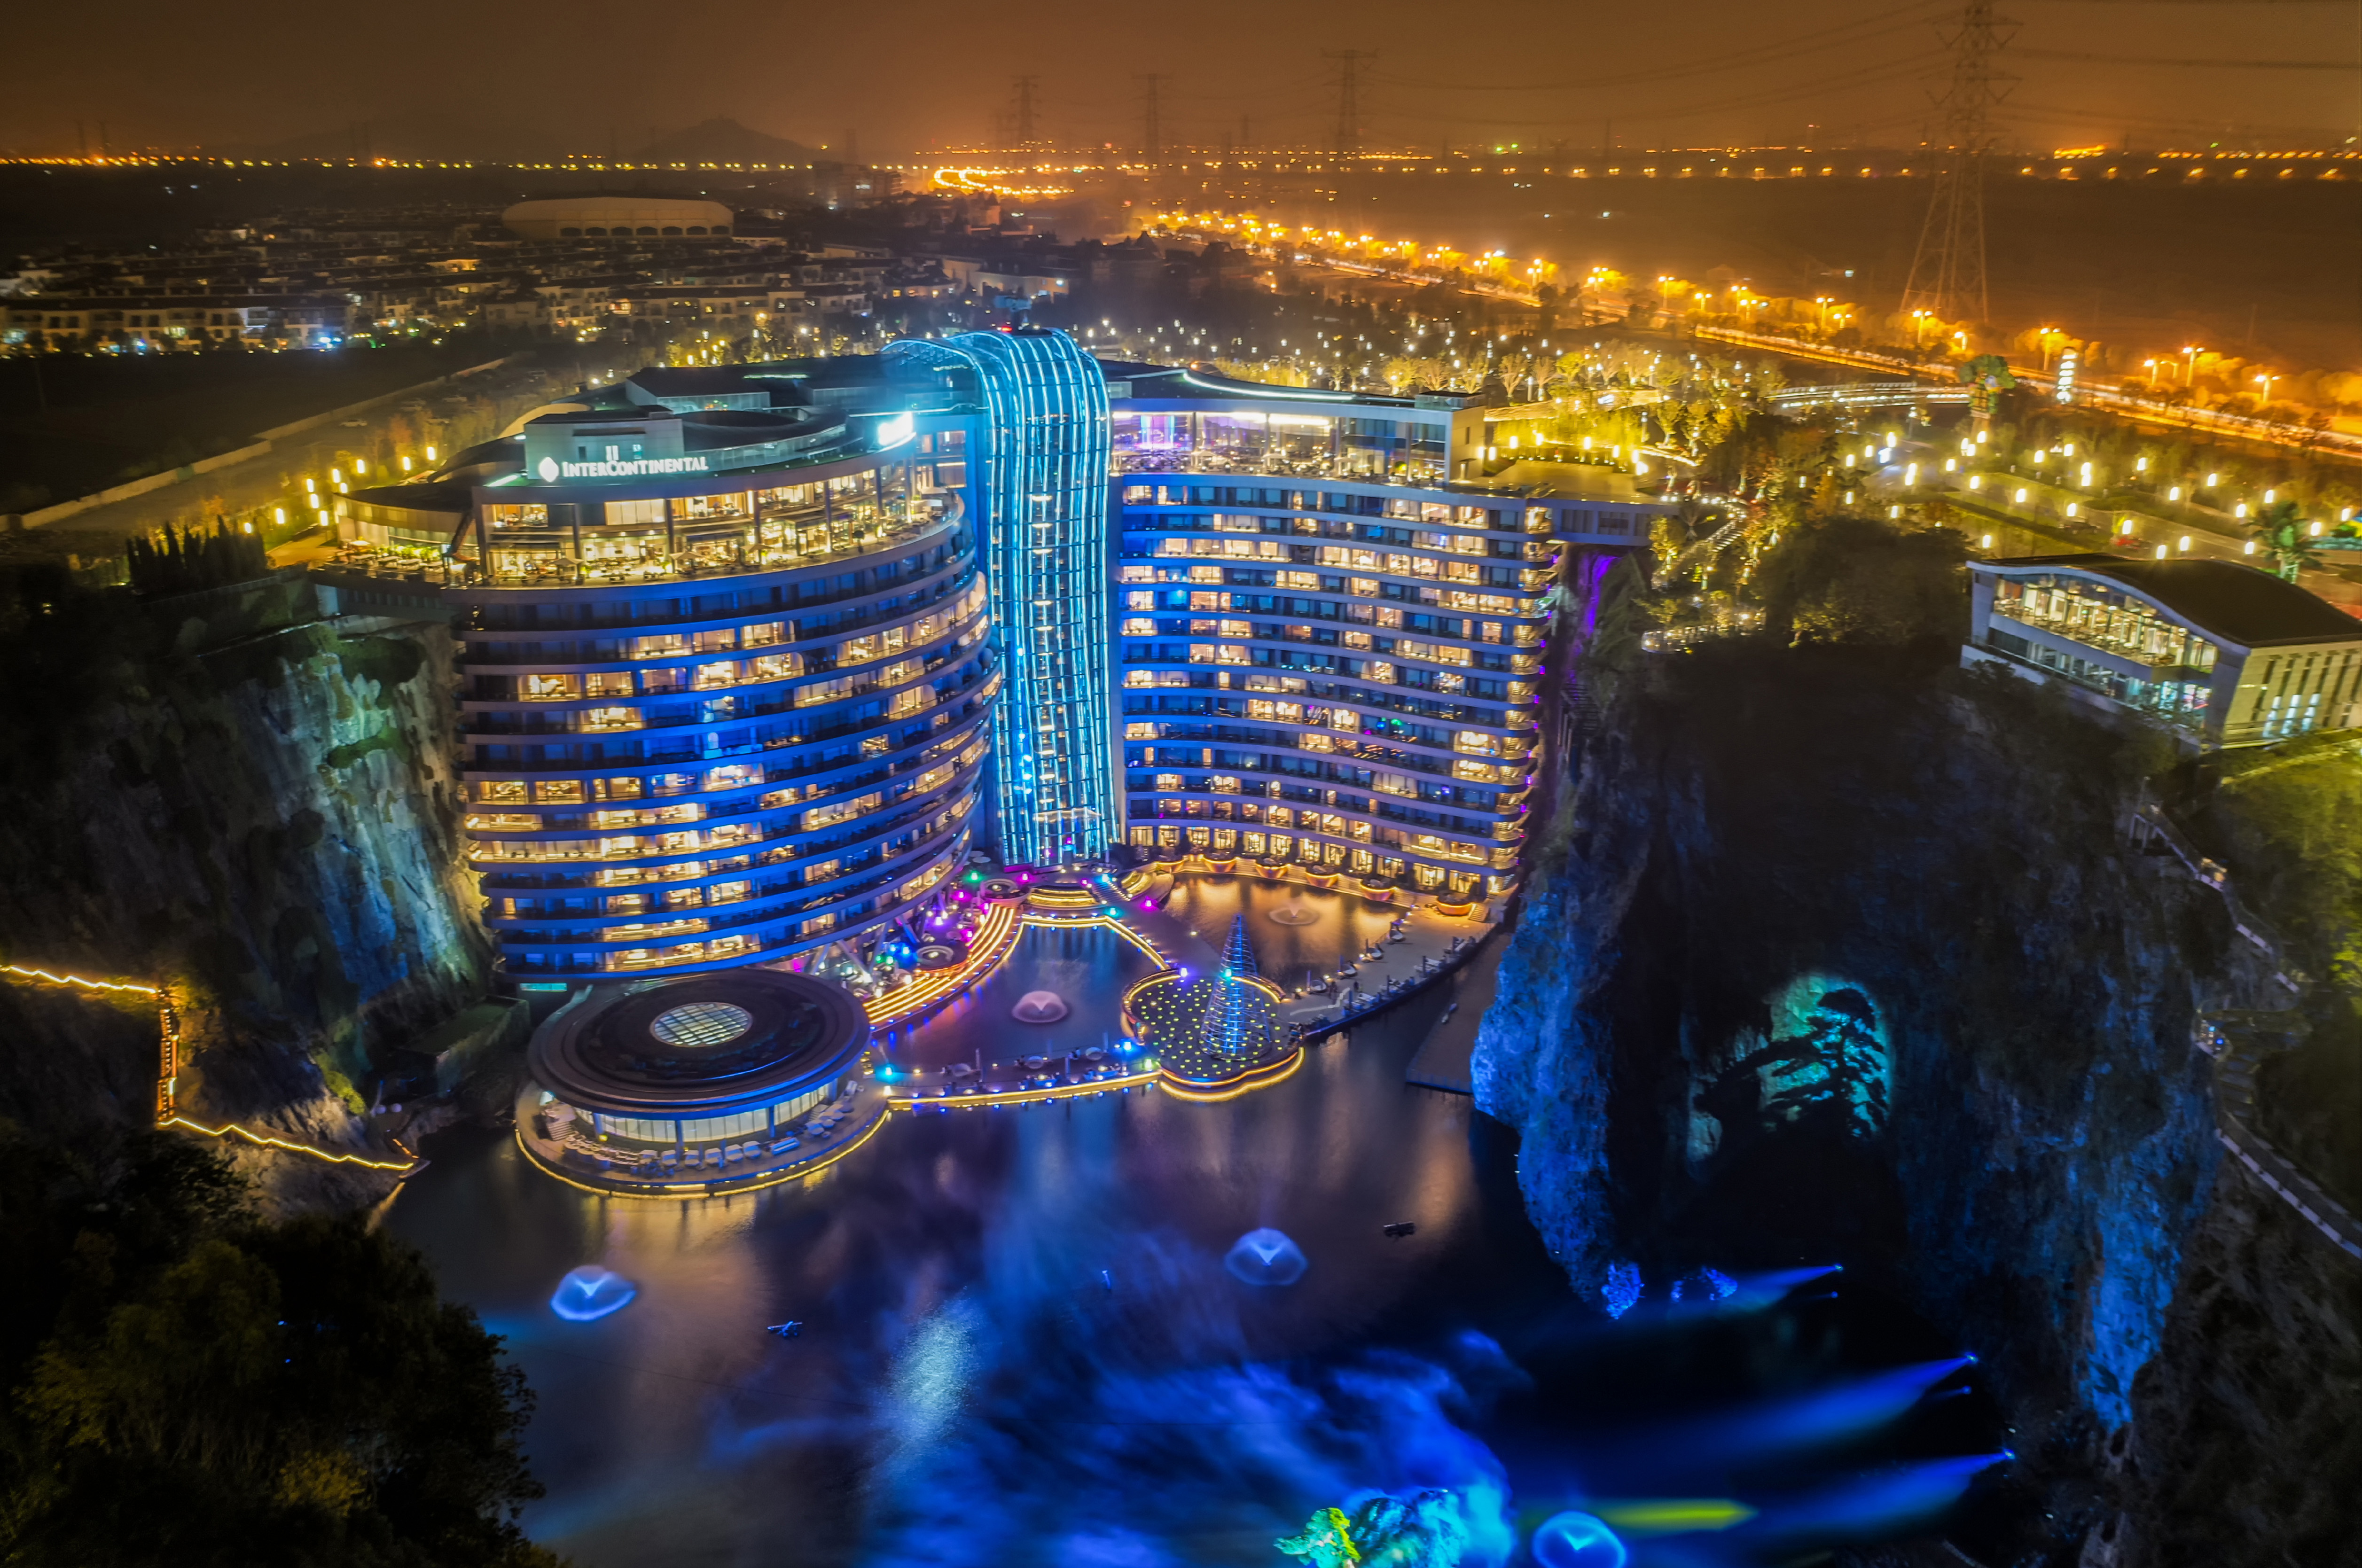 上海深坑酒店土豪的世界土豪的坑18层反人性设计思路